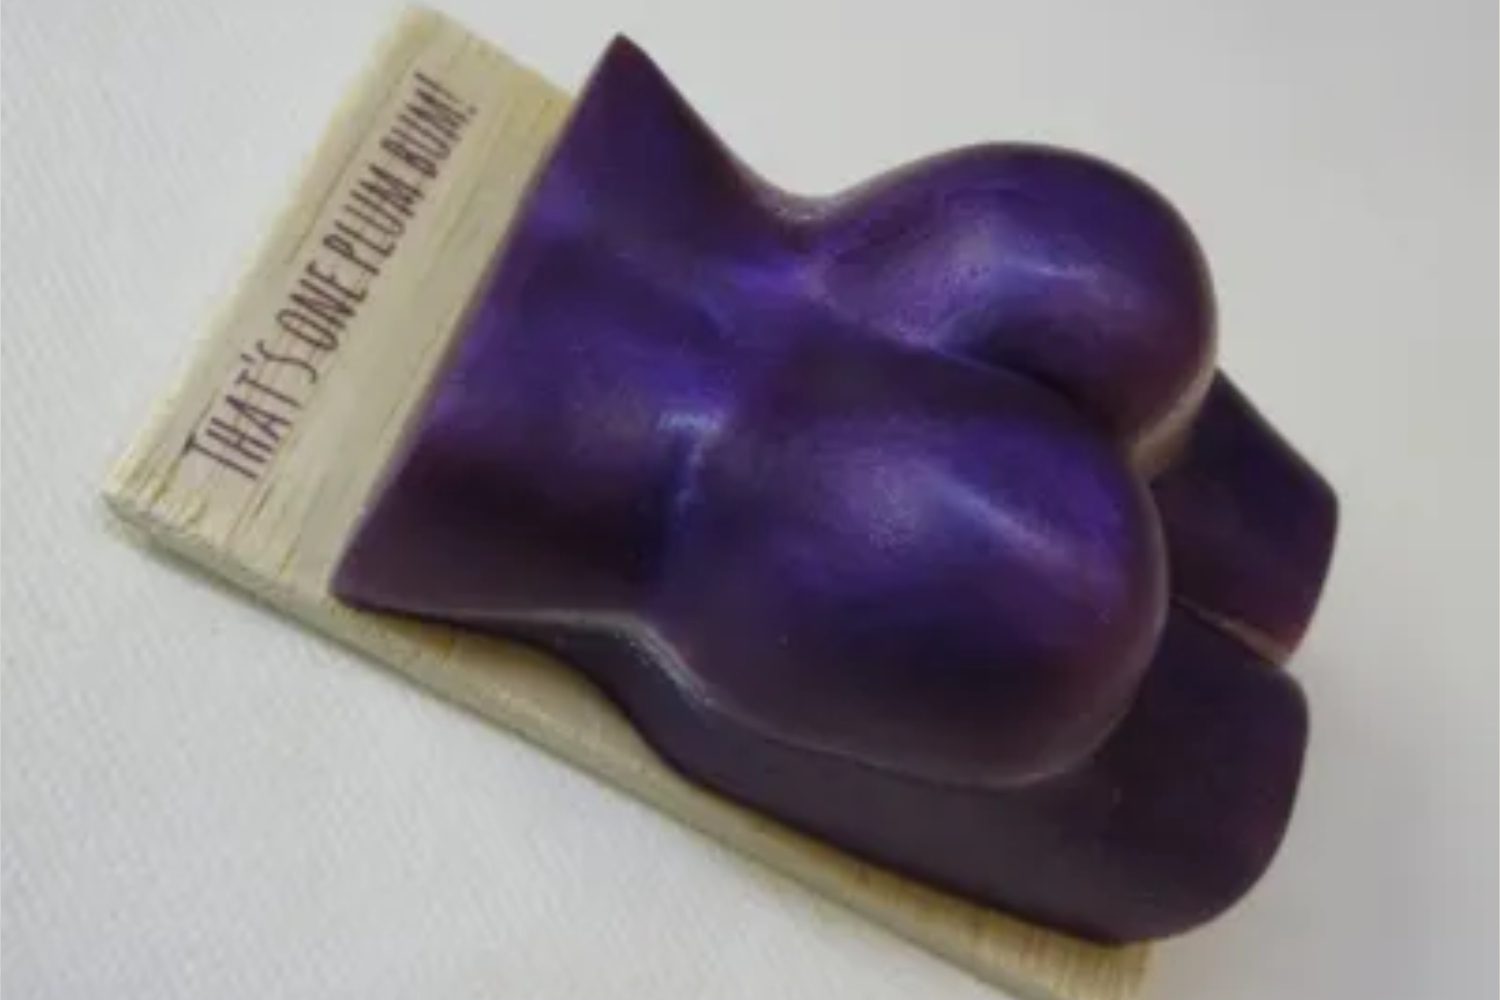 A purple soap shaped like a woman 's breast.